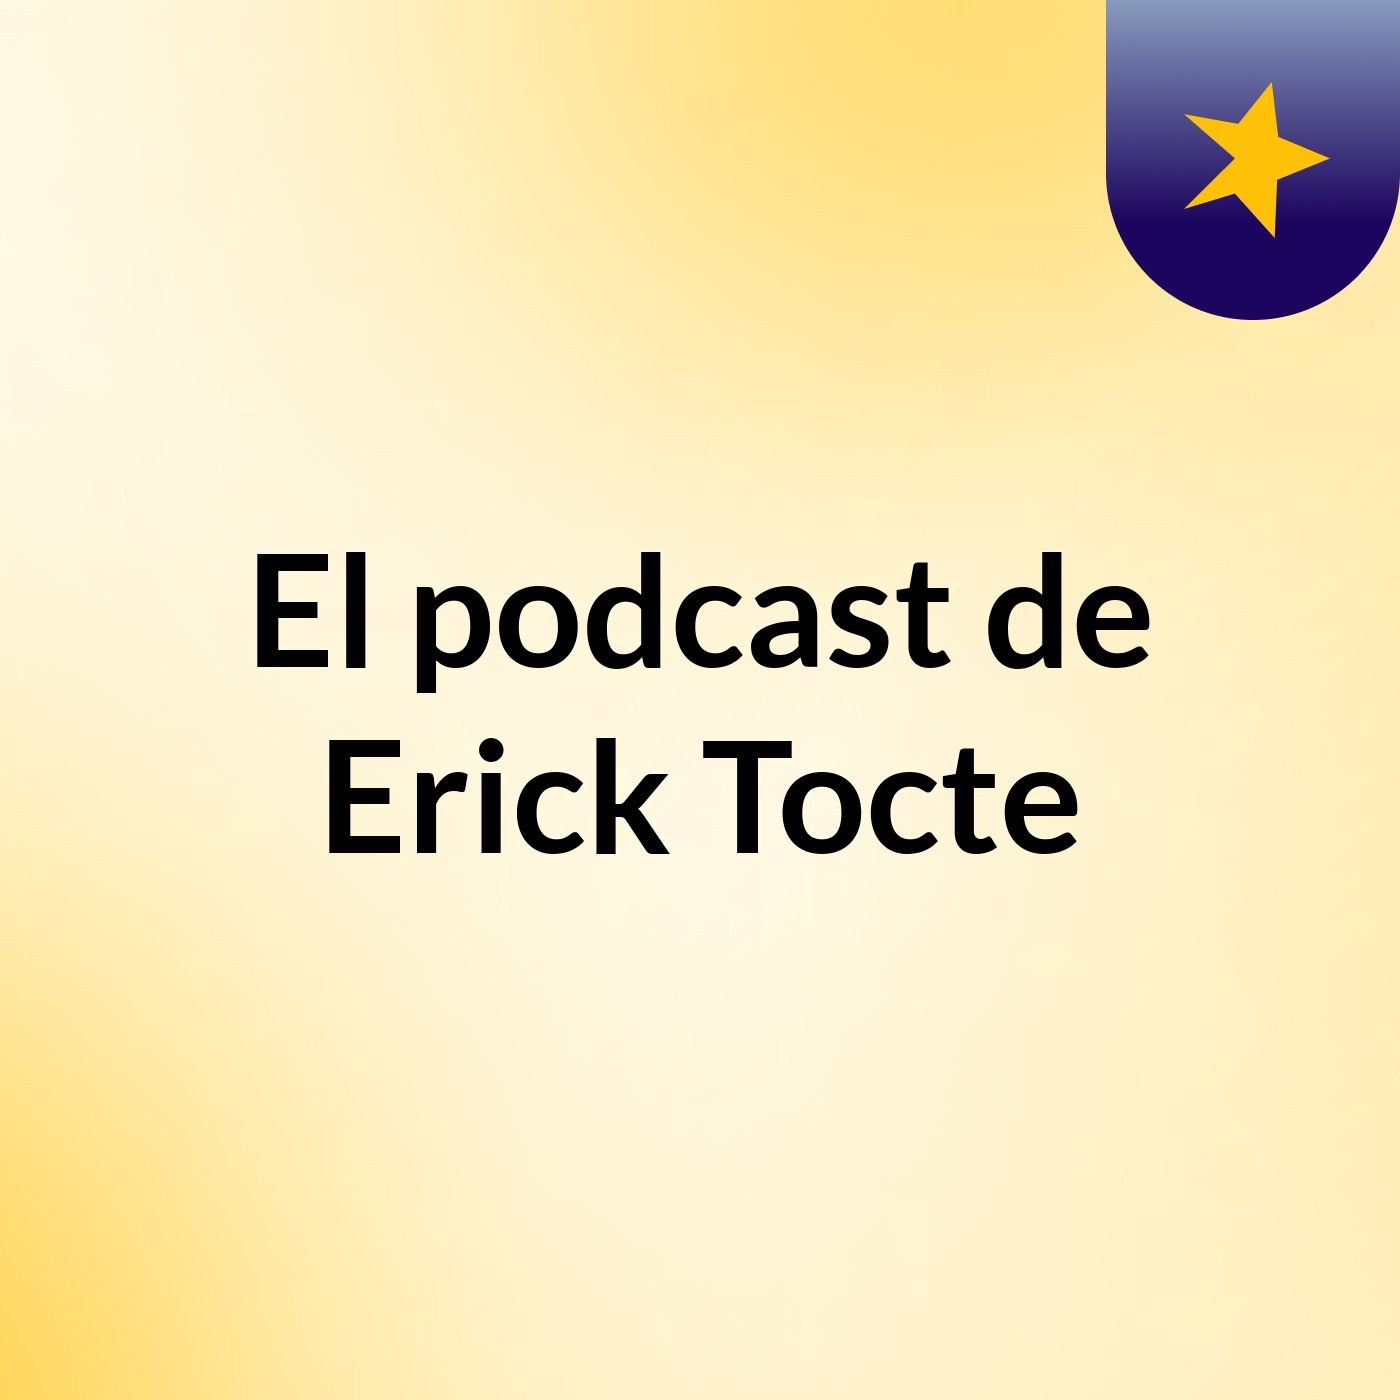 El podcast de Erick Tocte